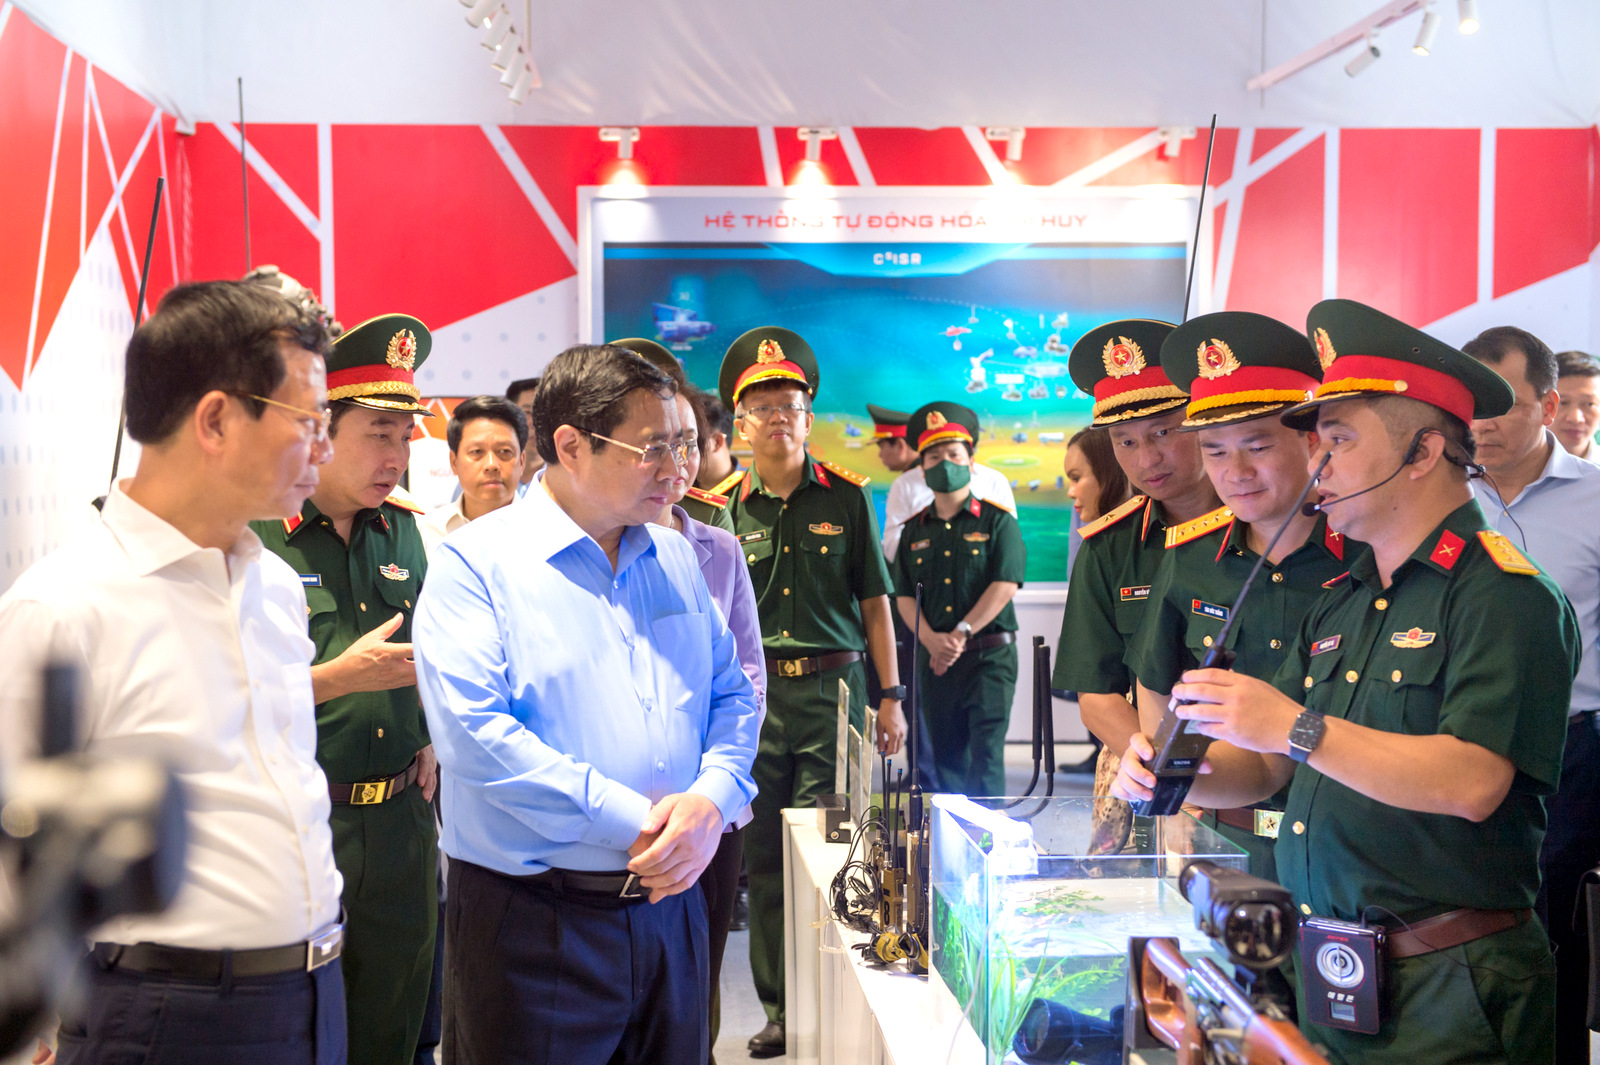 Thủ tướng Chính phủ Phạm Minh Chính và đoàn công tác nghe giới thiệu về các sản phẩm trang bị kĩ thuật công nghệ cao do Viettel đang nghiên cứu, sản xuất